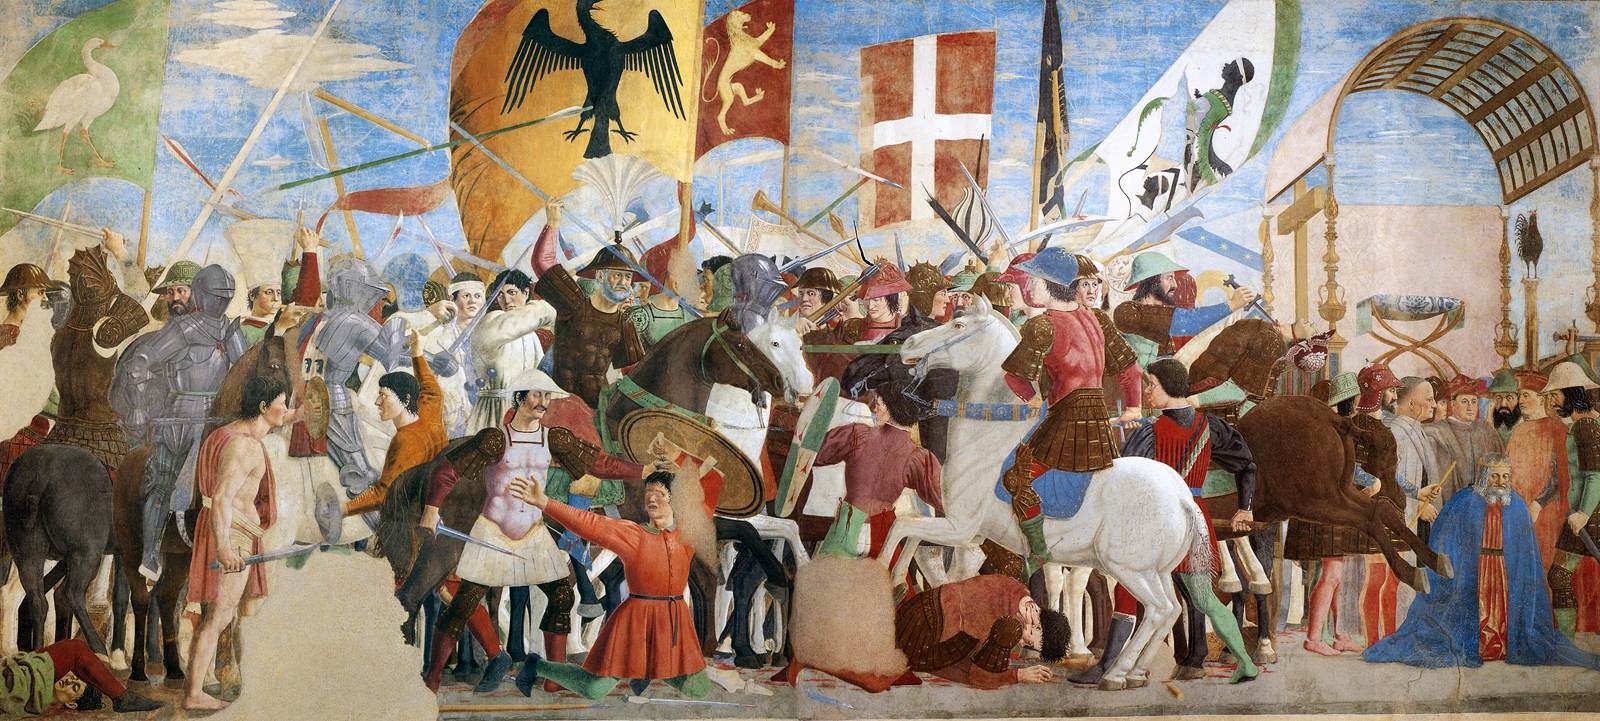 Piero della Francesca - Battle between Heraclius and Chosroes